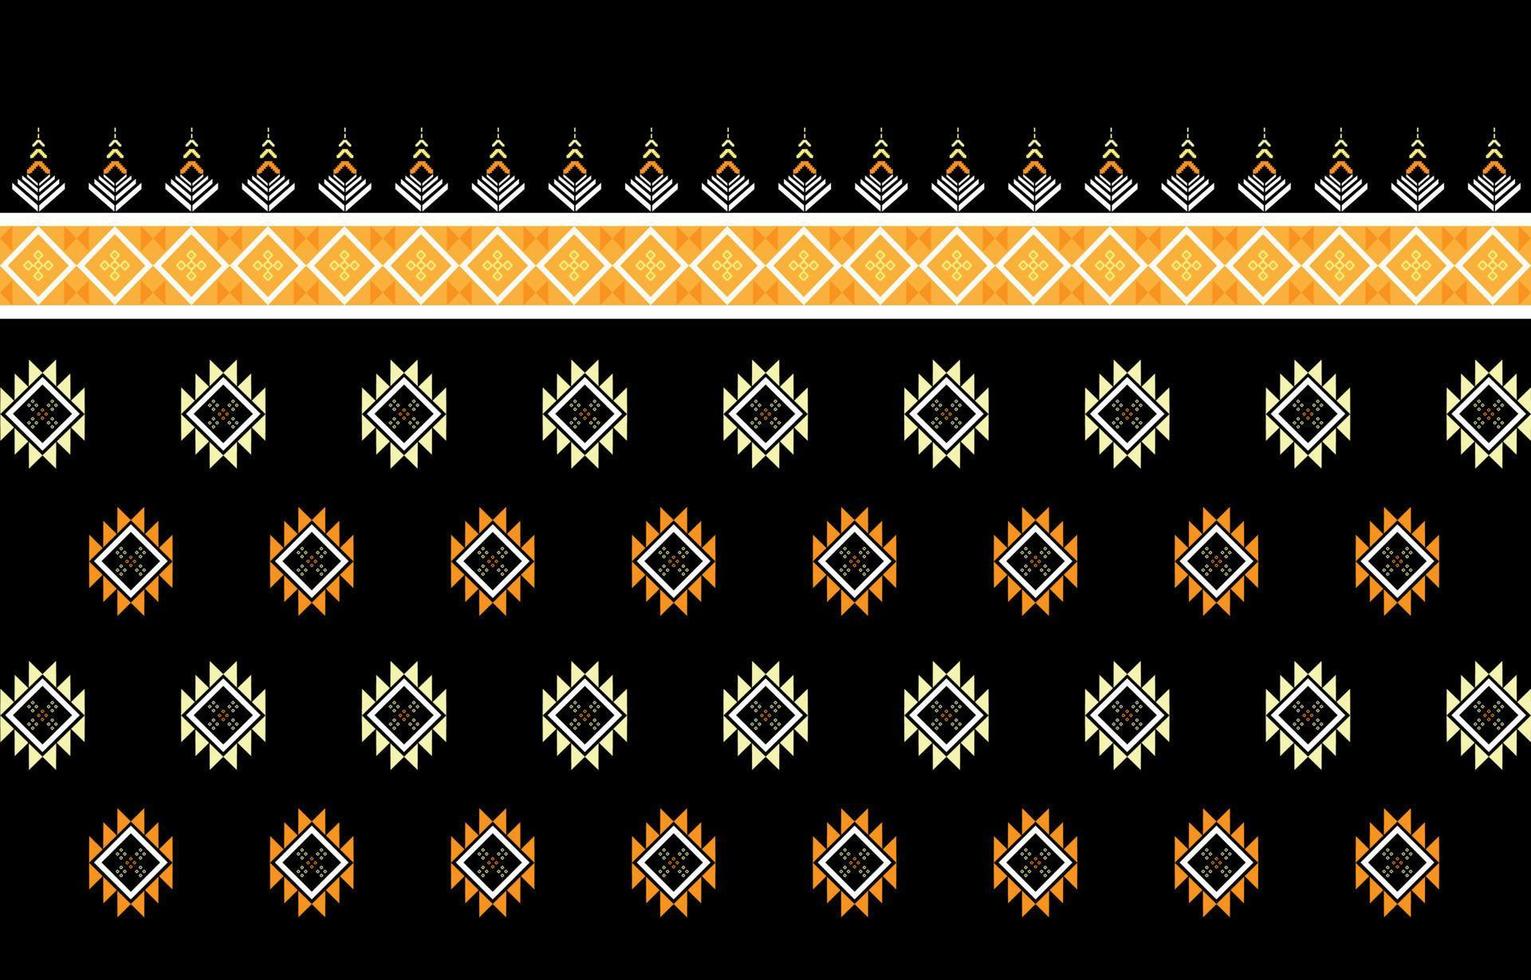 design tradicional de padrão oriental étnico geométrico para roupas, tecidos, livros e plantas. padrões geométricos e tribais abstratos, padrões geométricos de tecido local de design de uso vetor